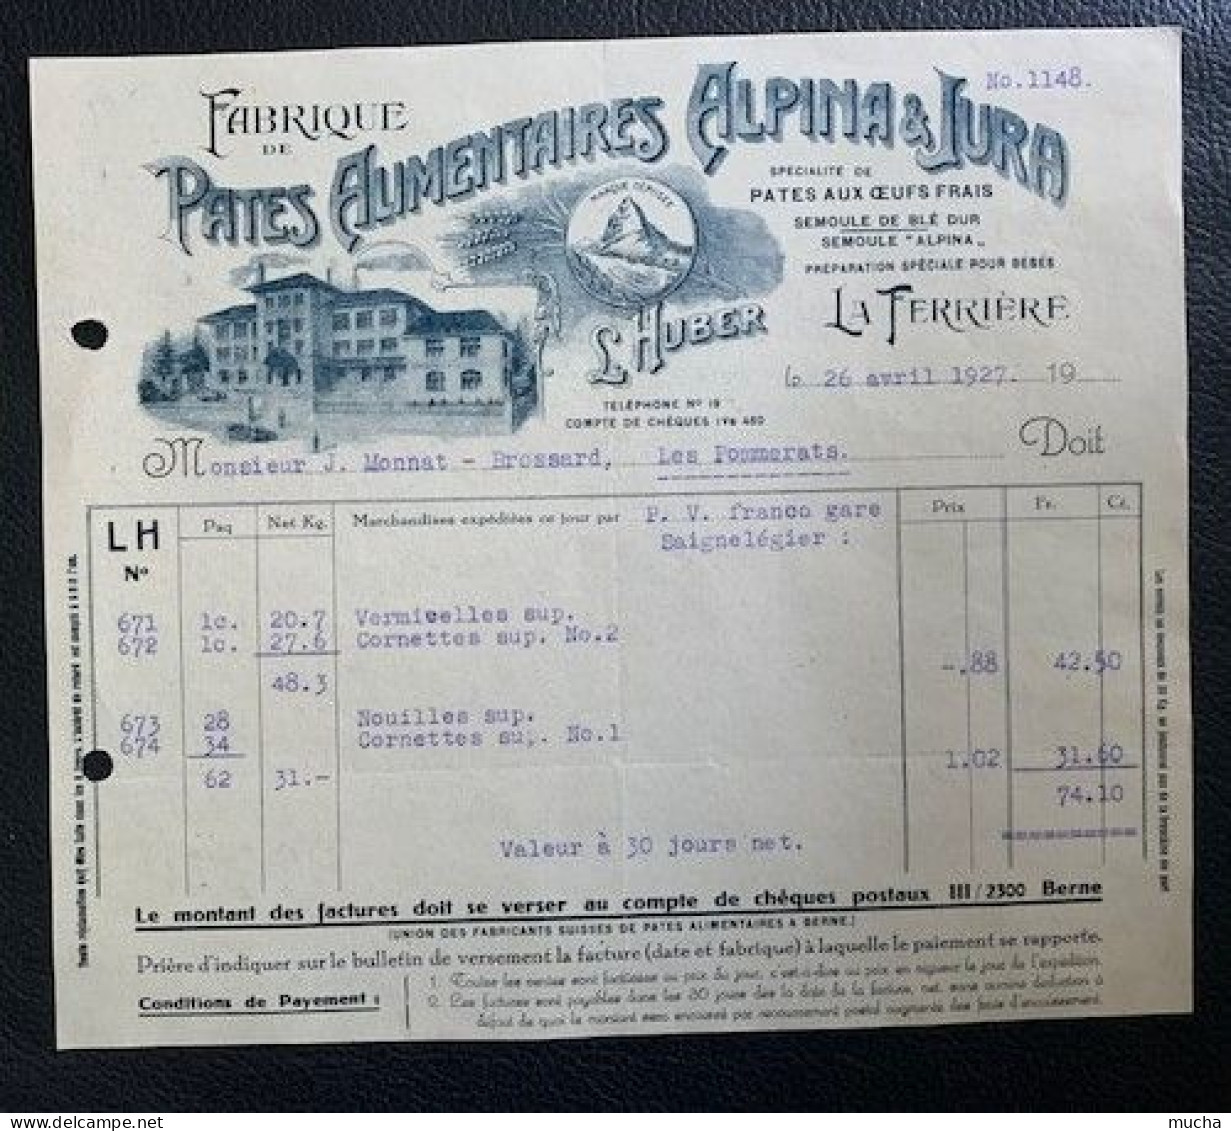 70148 - Facture Illustrée Pates Alimentaires Alpina & Jura La Ferrière 26.04.1922 - Suisse